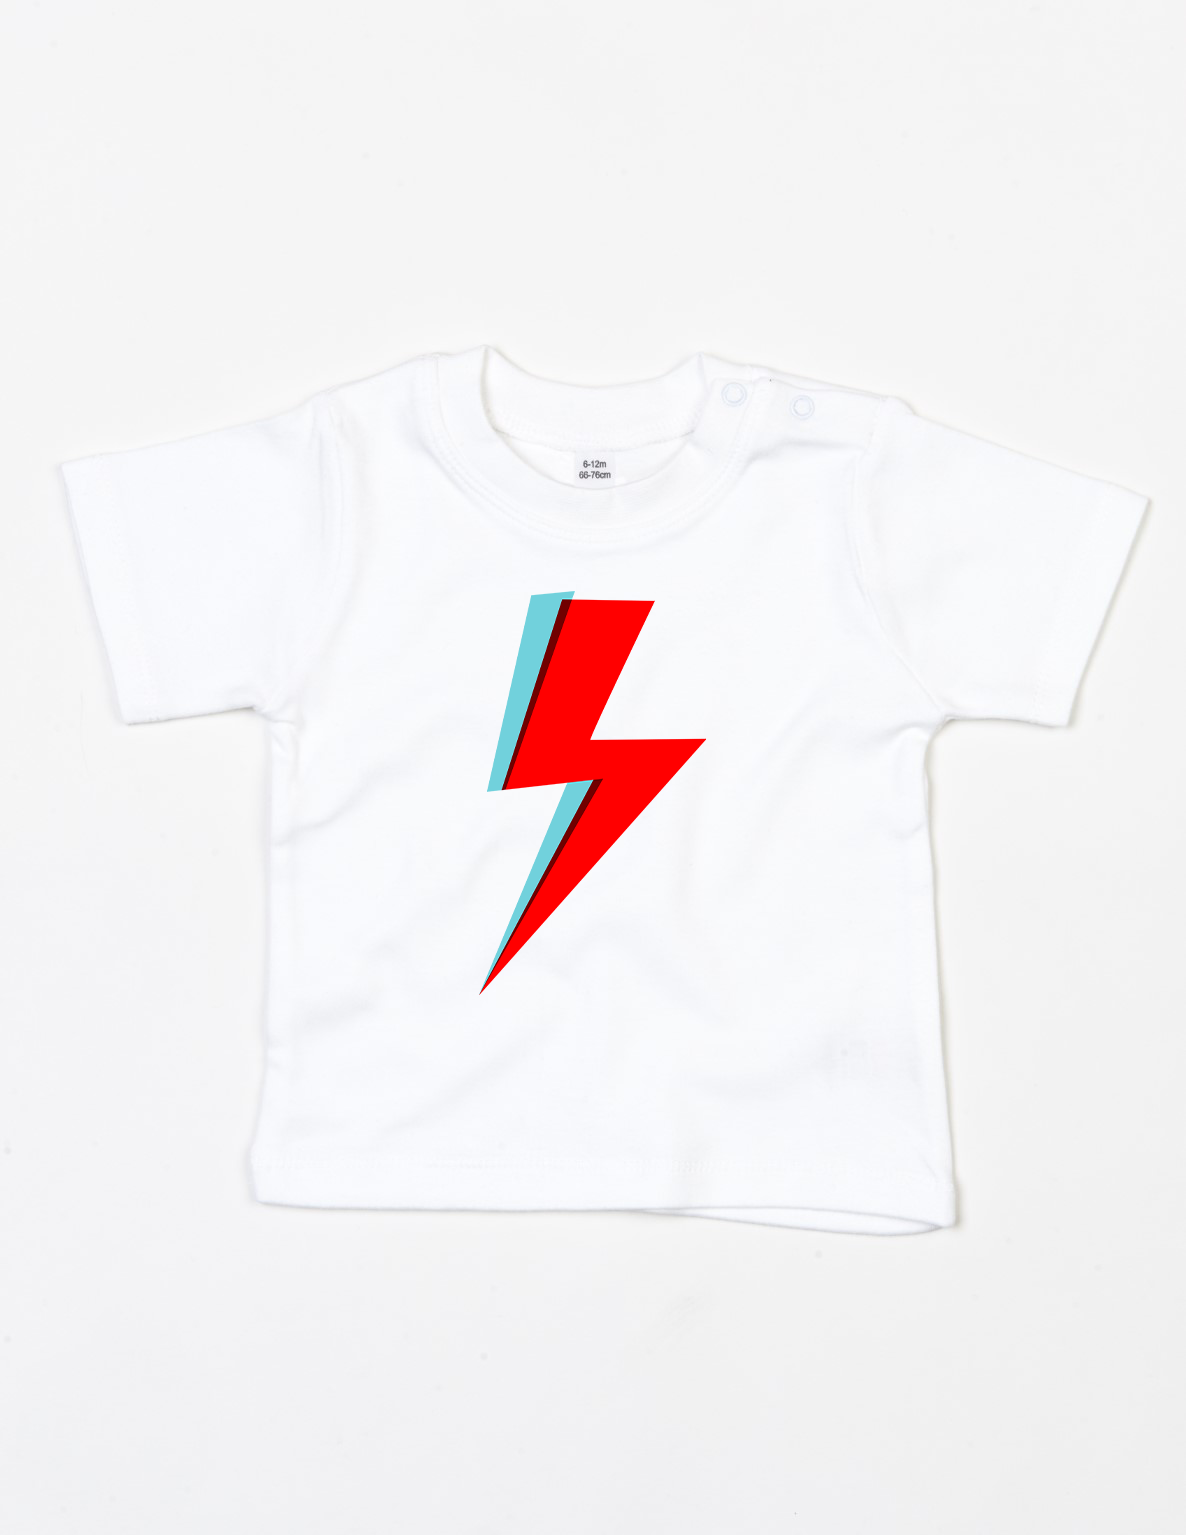 Bowie Bolt' Organic Baby T-Shirt